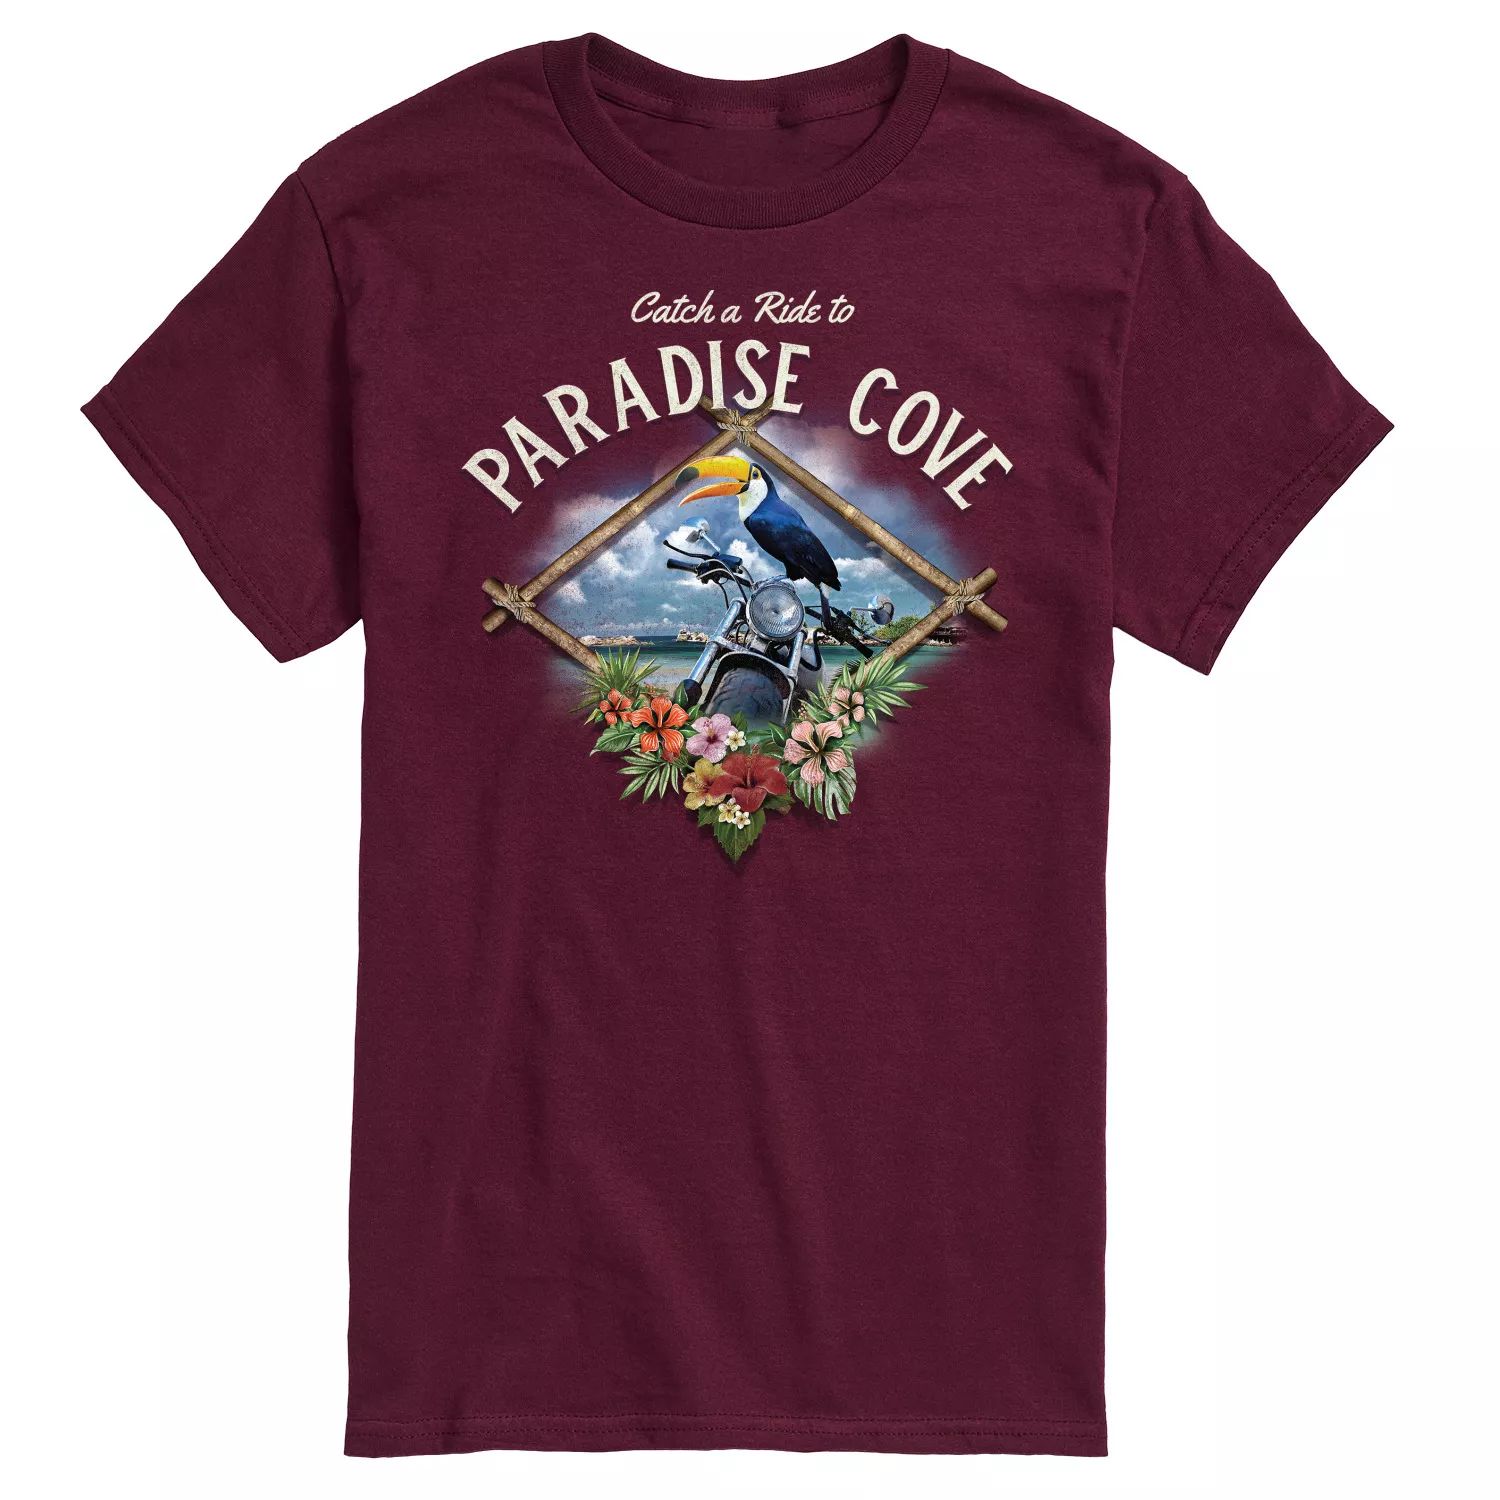 Мужская футболка с открыткой Paradise Cove Licensed Character